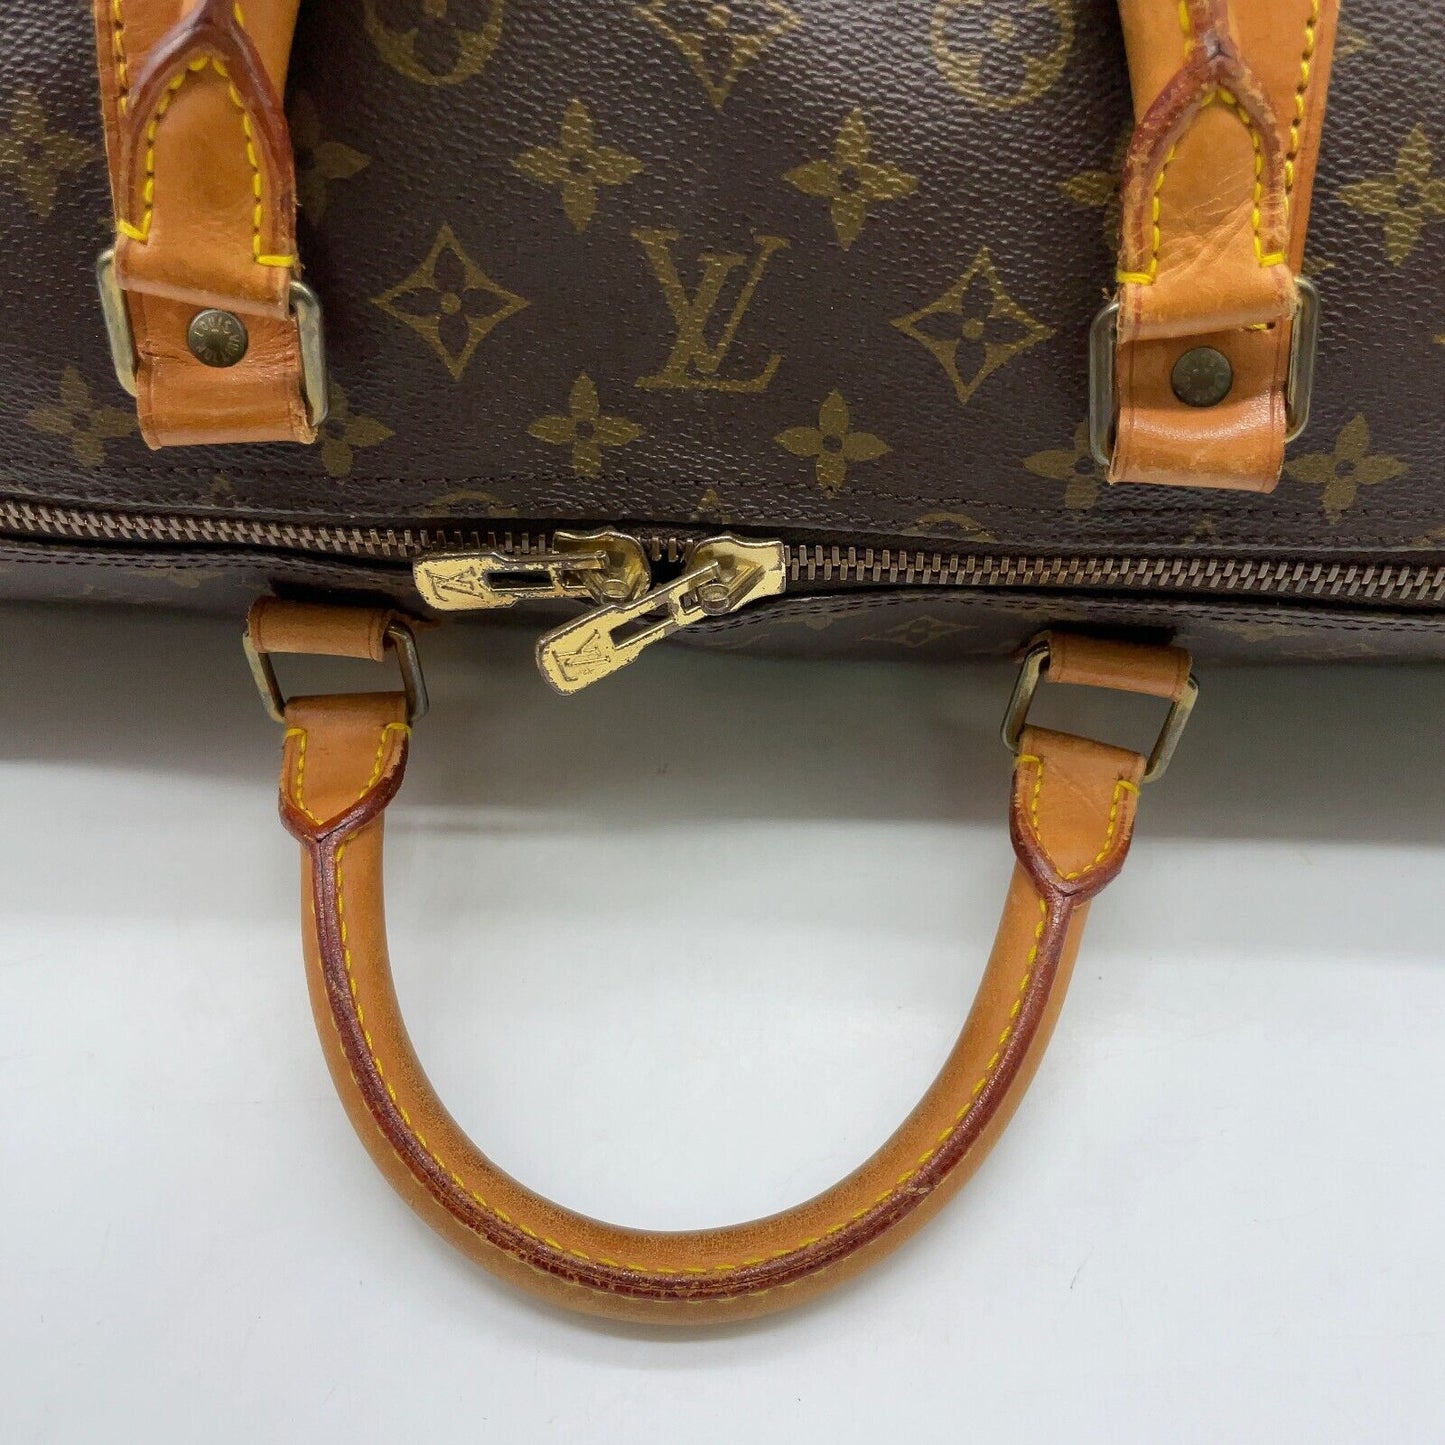 Original/Auth Louis Vuitton - Keepall Bandouliere 60 - Klassisch - Monogramm